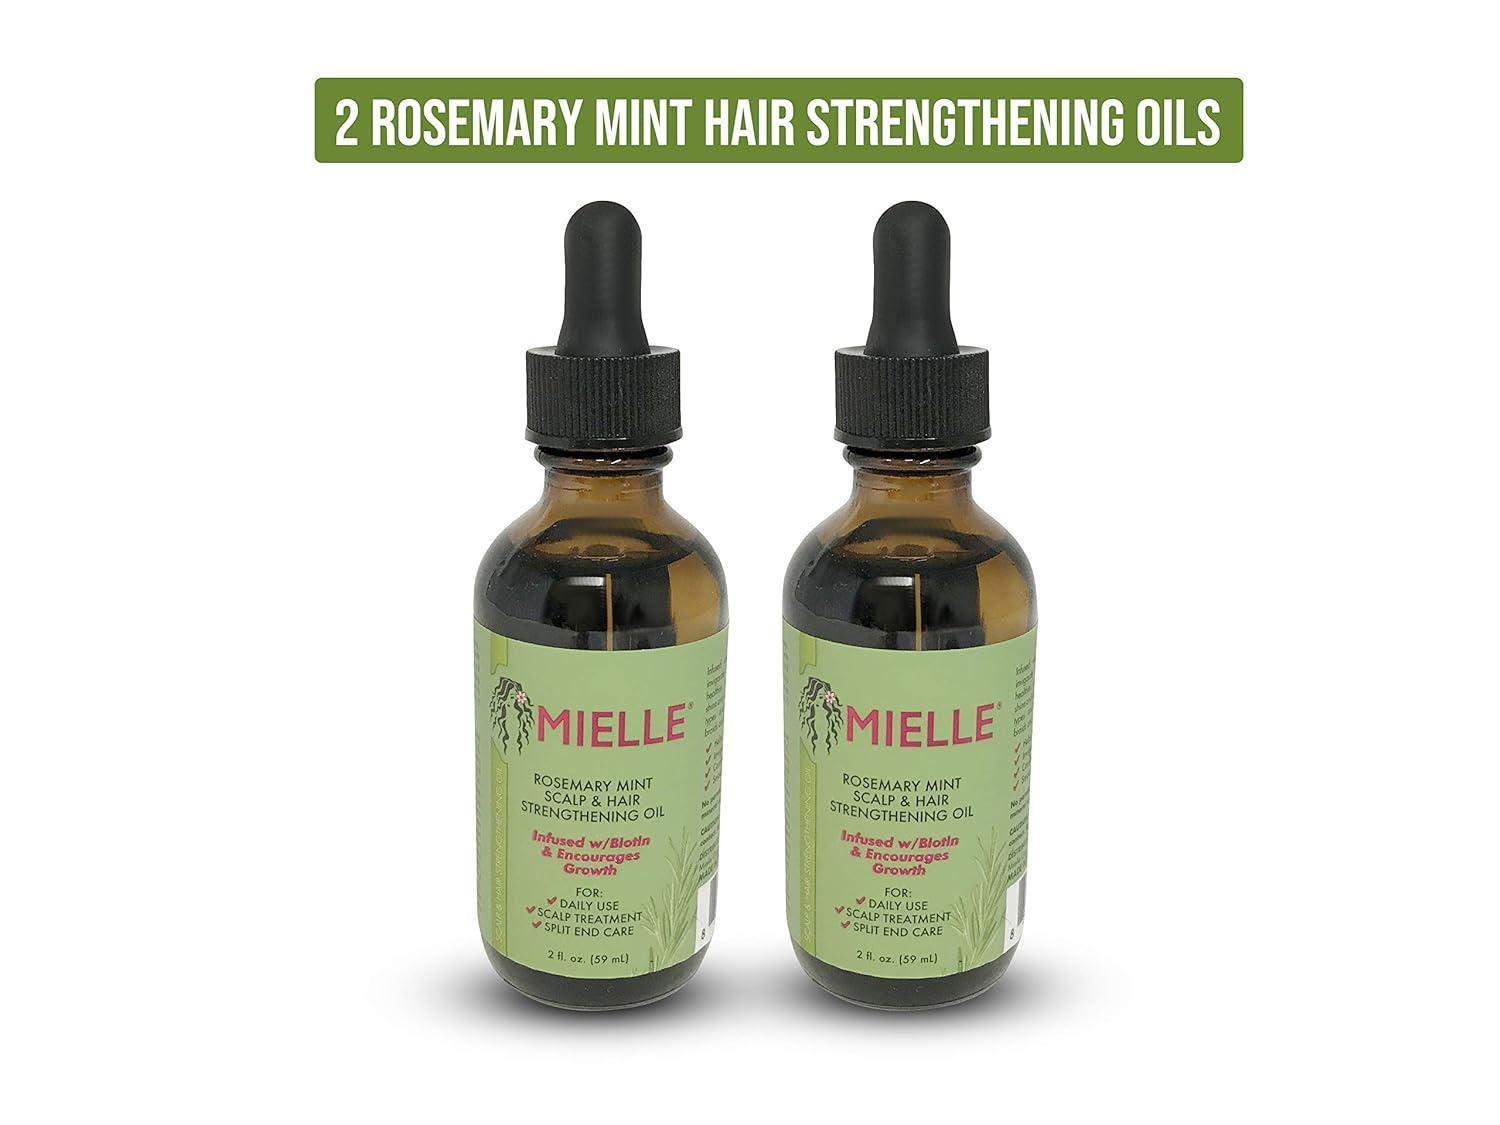  Mielle Scalp & Hair Strengthening Oil Rosemary Mint